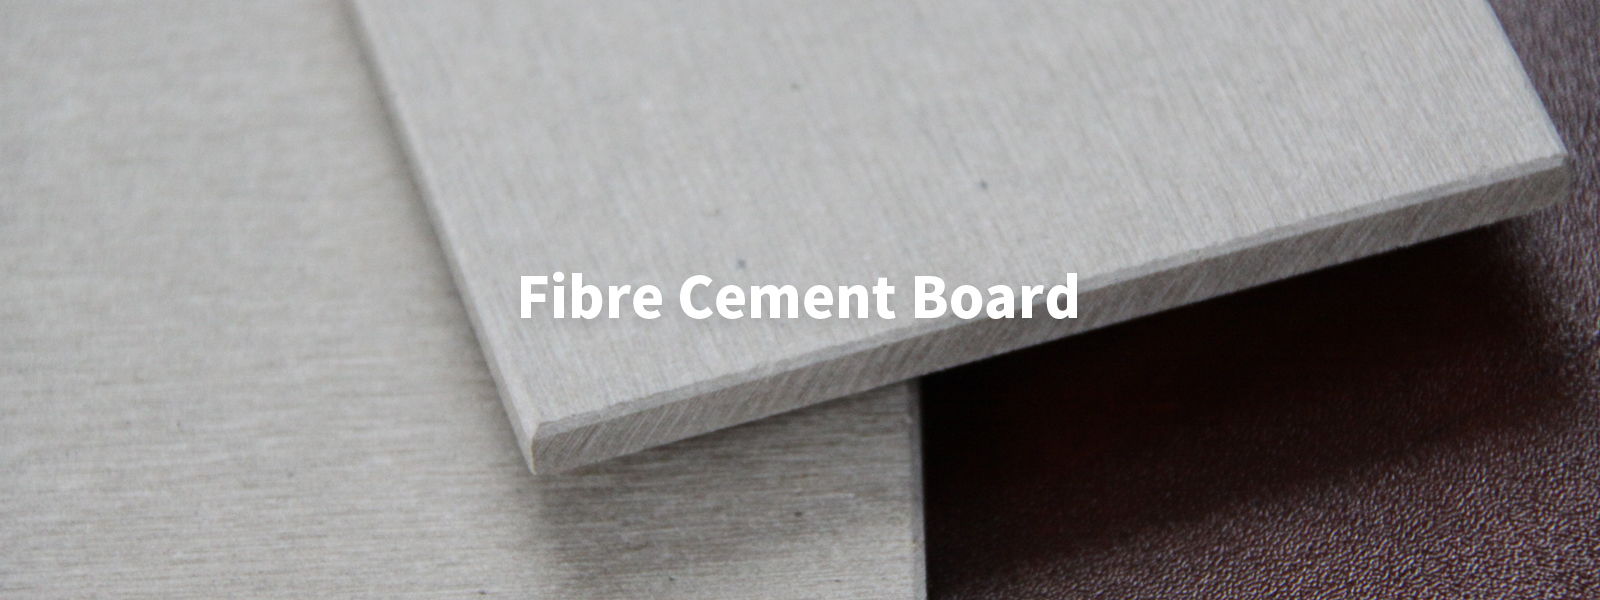 Fibre Cement Board